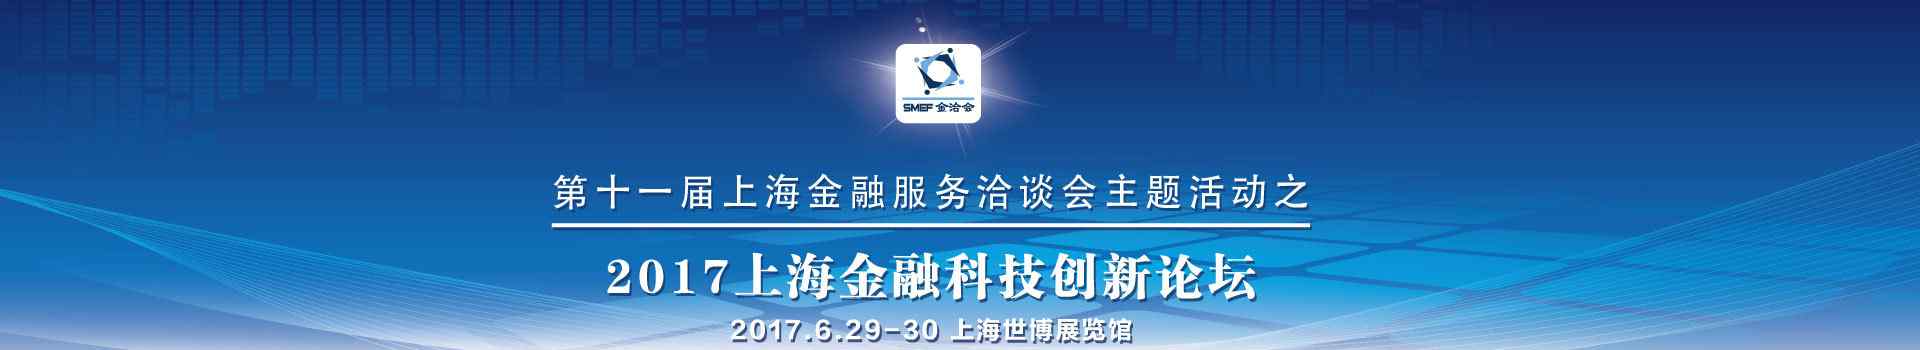 上海金融业联合会 2017上海国际金融科技创新与区块链大会-百格活动